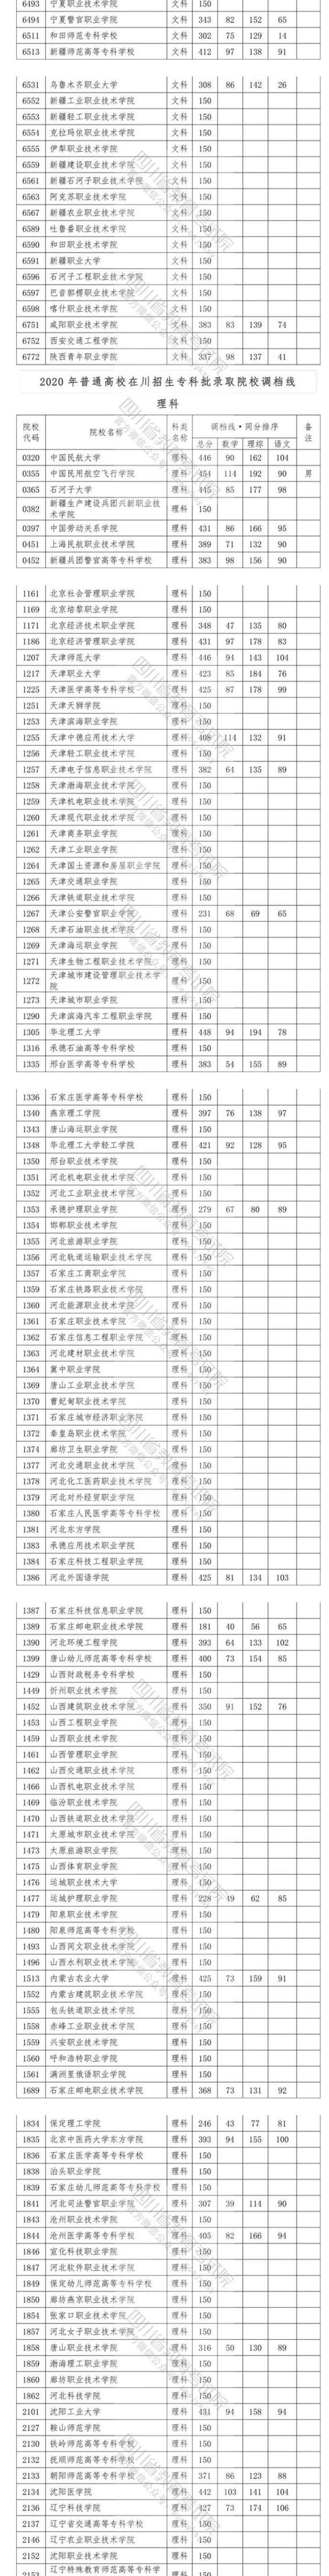 2020四川高考专科院校投档分数线及相关院校代码